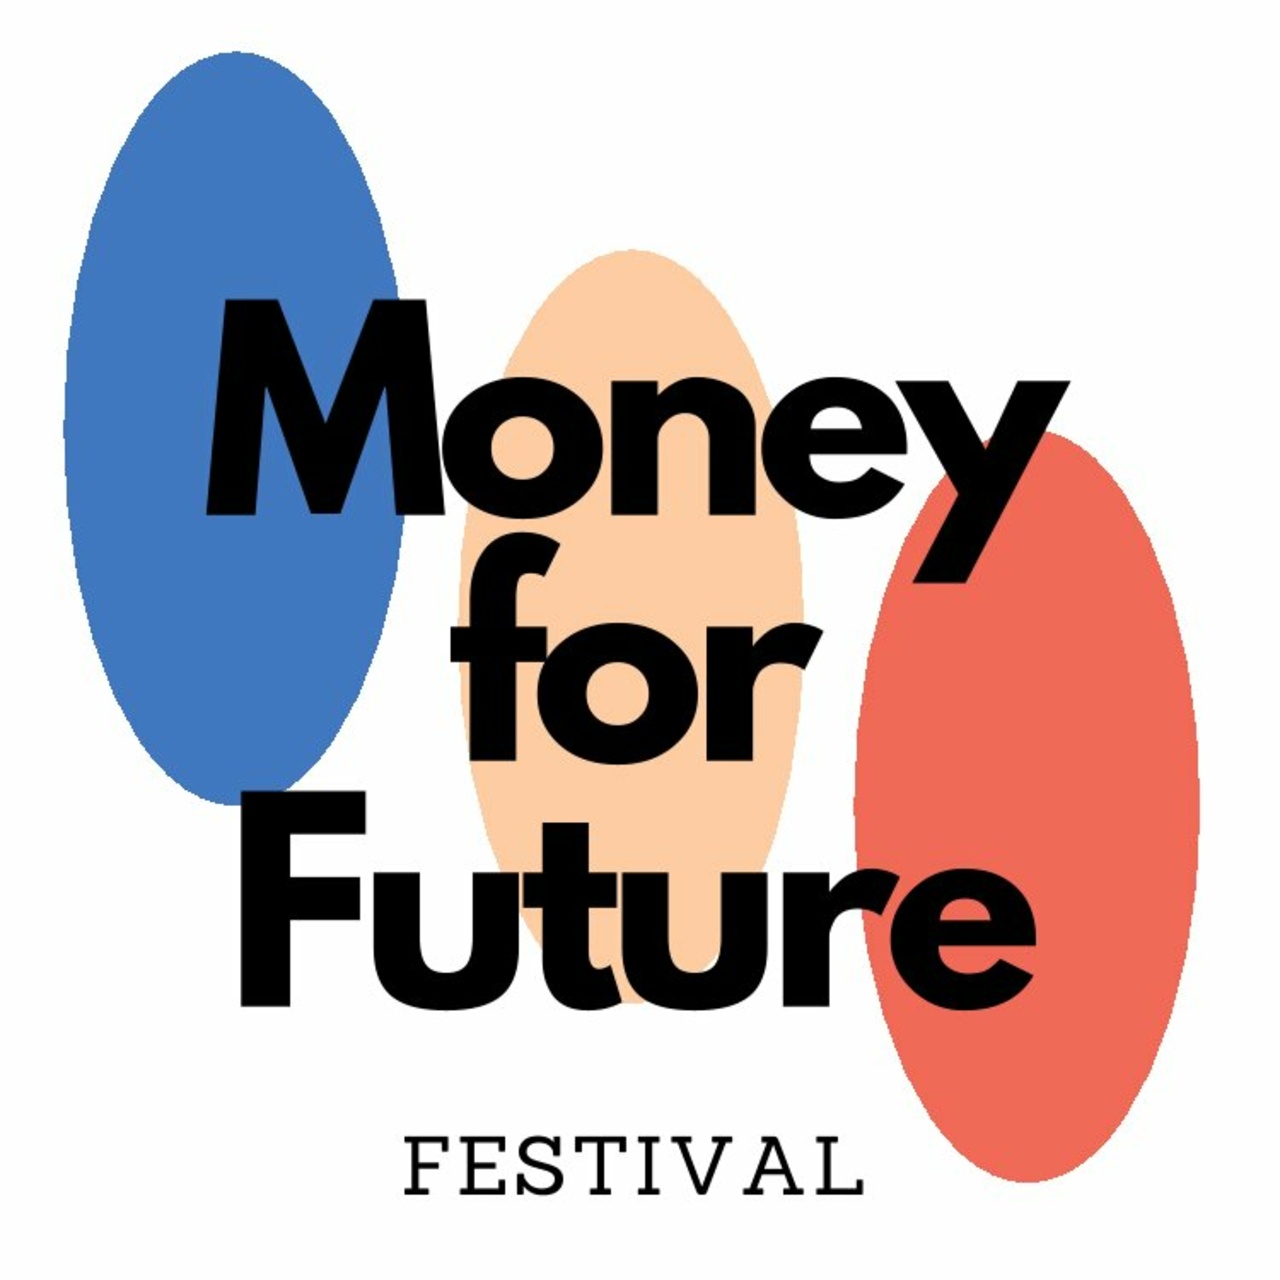 Money for Future Festival